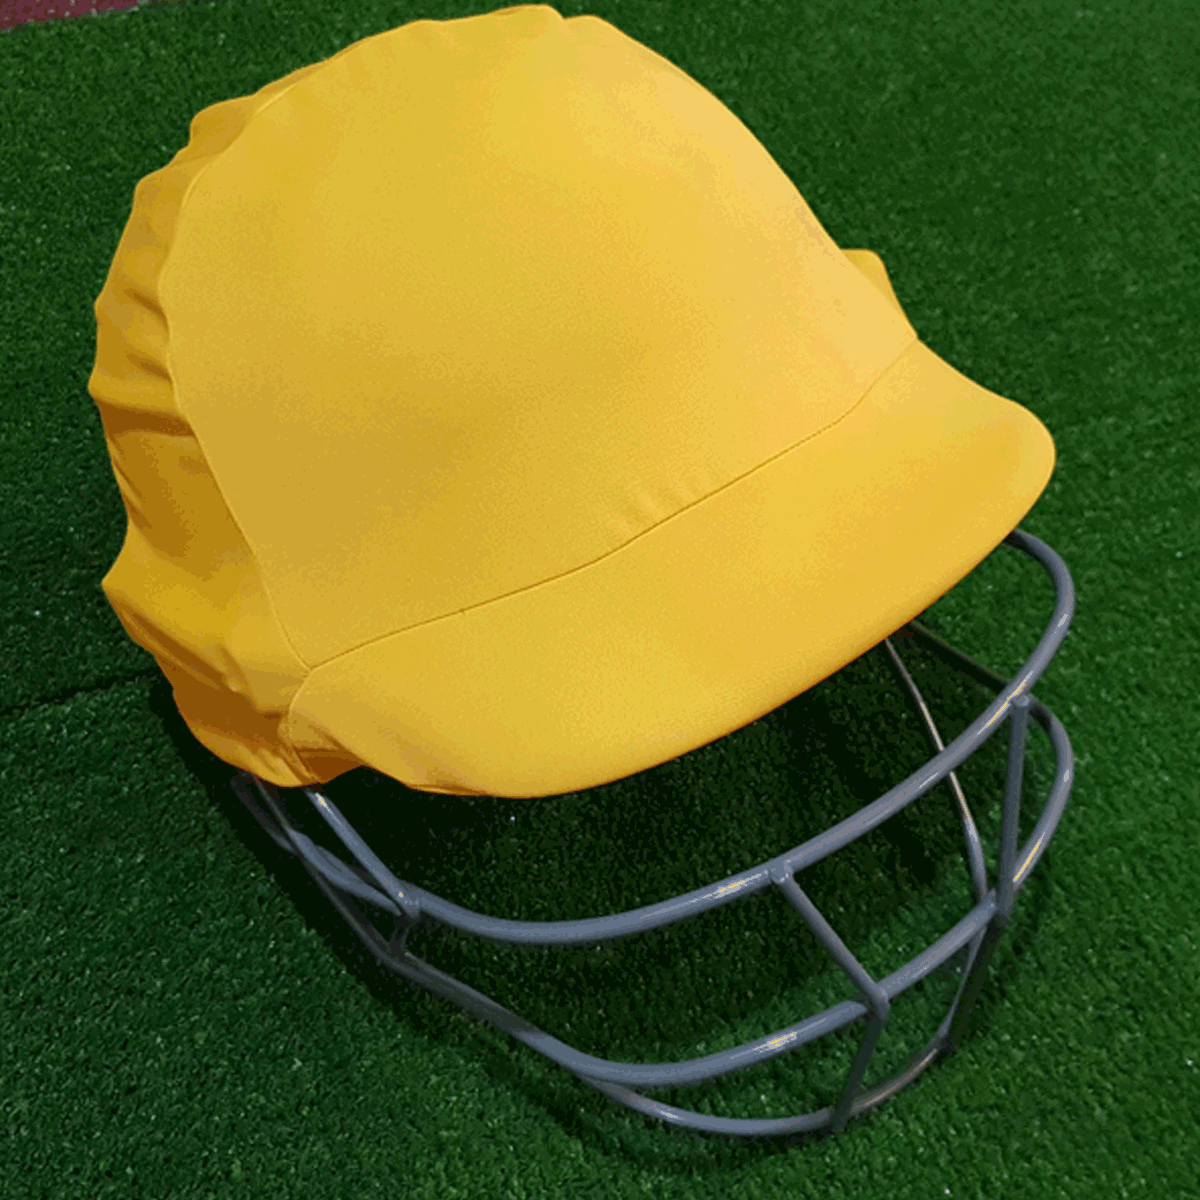 Squidlid - Cricket Helmet Cover